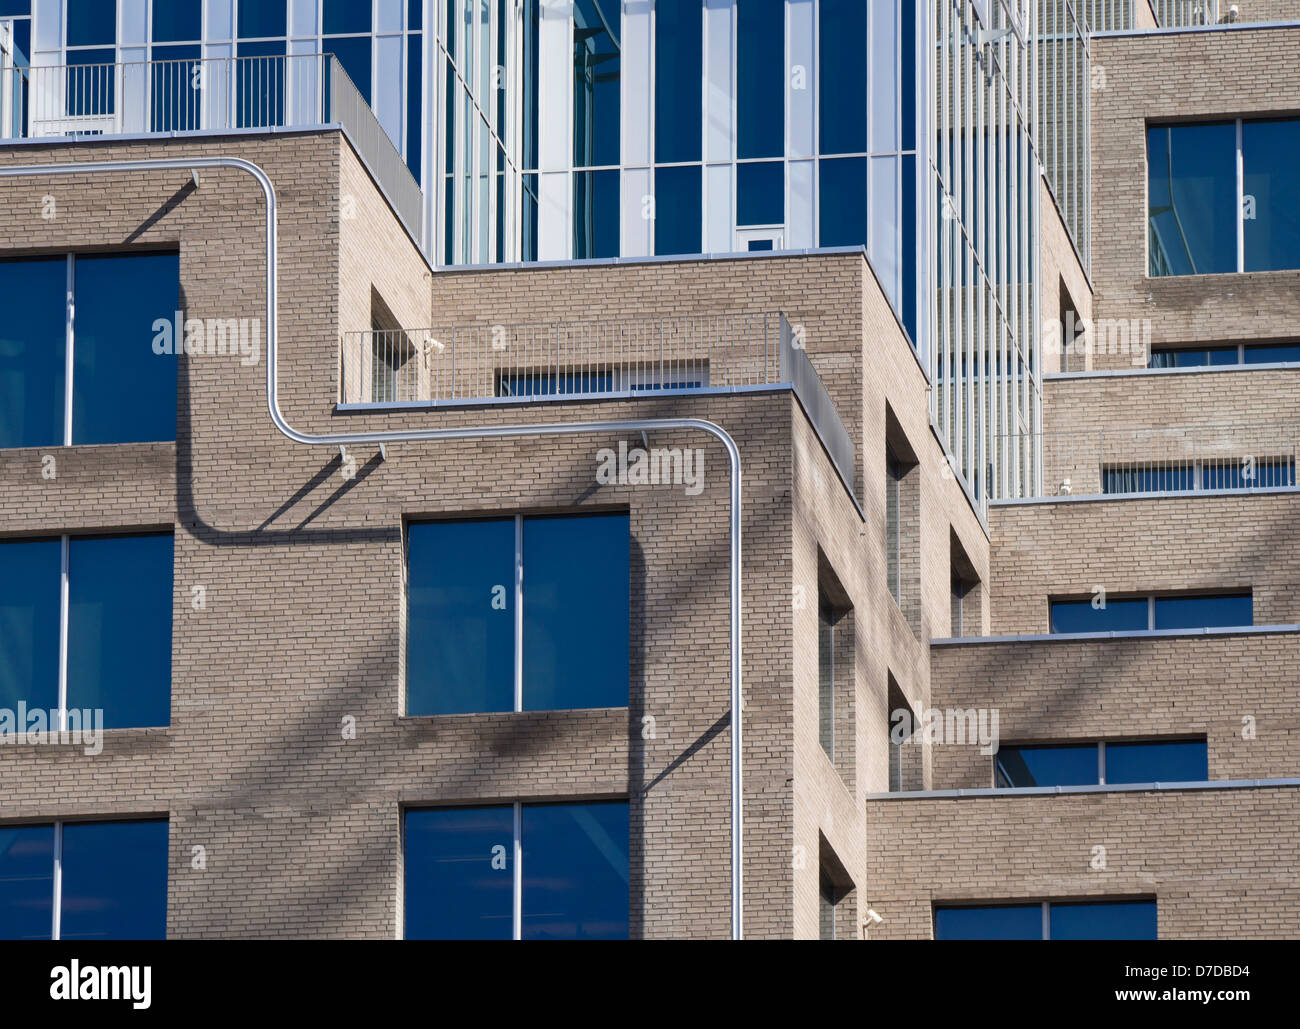 El código de barras, una nueva zona de oficinas en el centro de Oslo, Noruega , variadas e interesantes fachadas, sede del Banco Noruego DNB Foto de stock